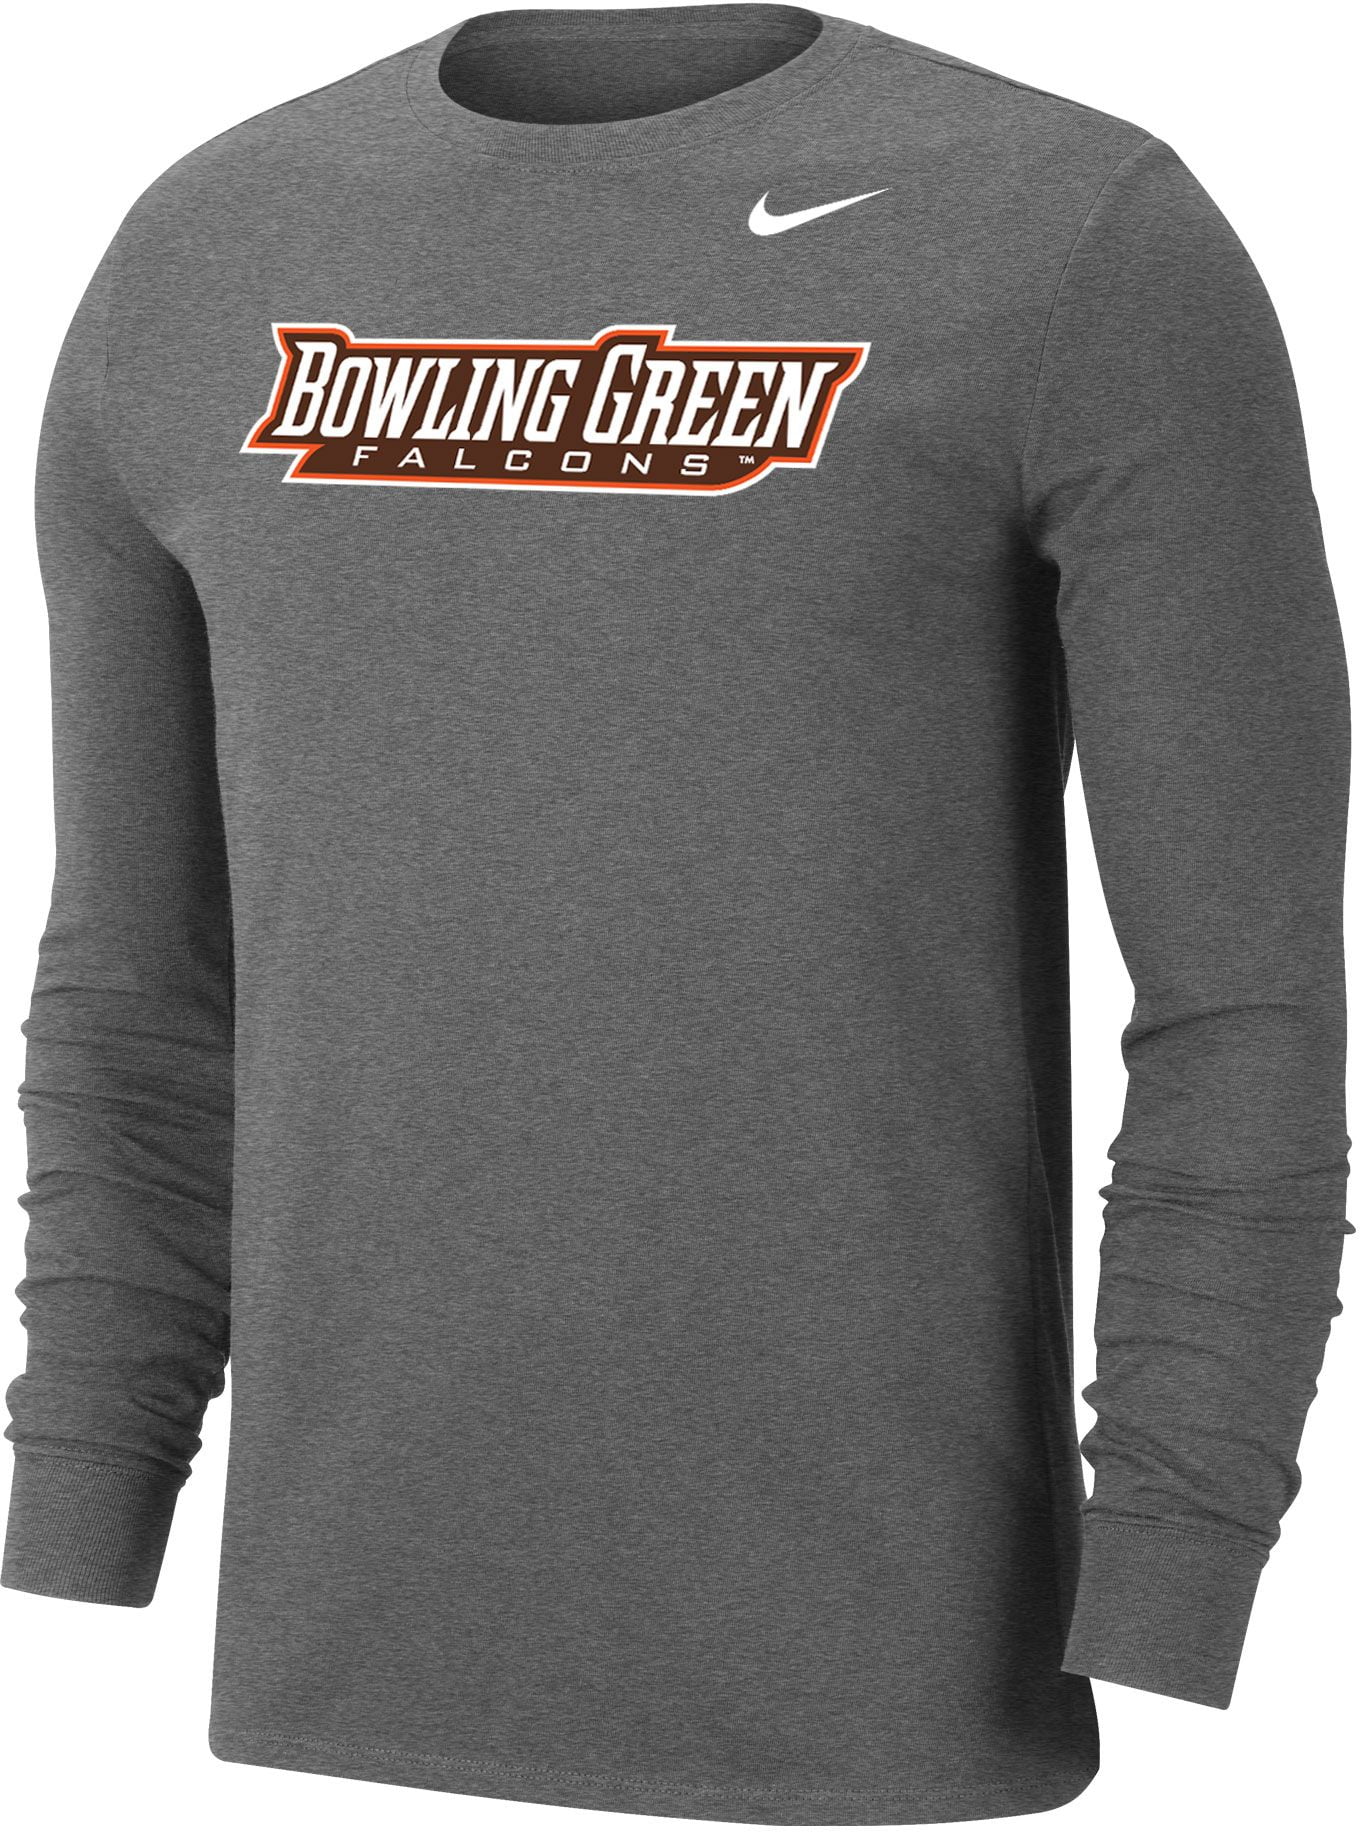 Nike - Nike Men's Bowling Green Falcons Grey Wordmark Long Sleeve T ...